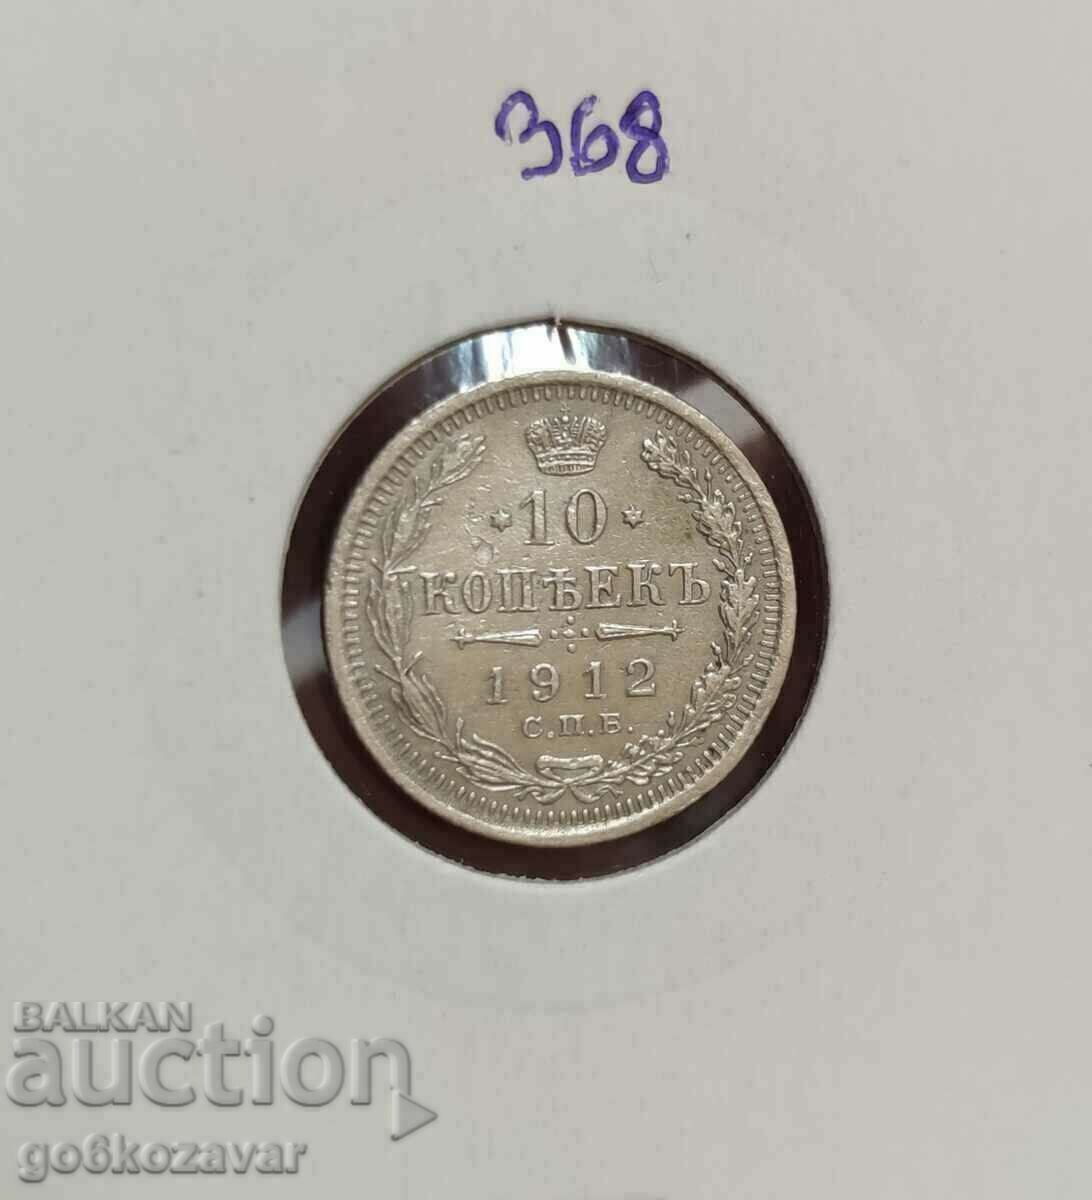 Russia 10 kopecks 1912 Silver!